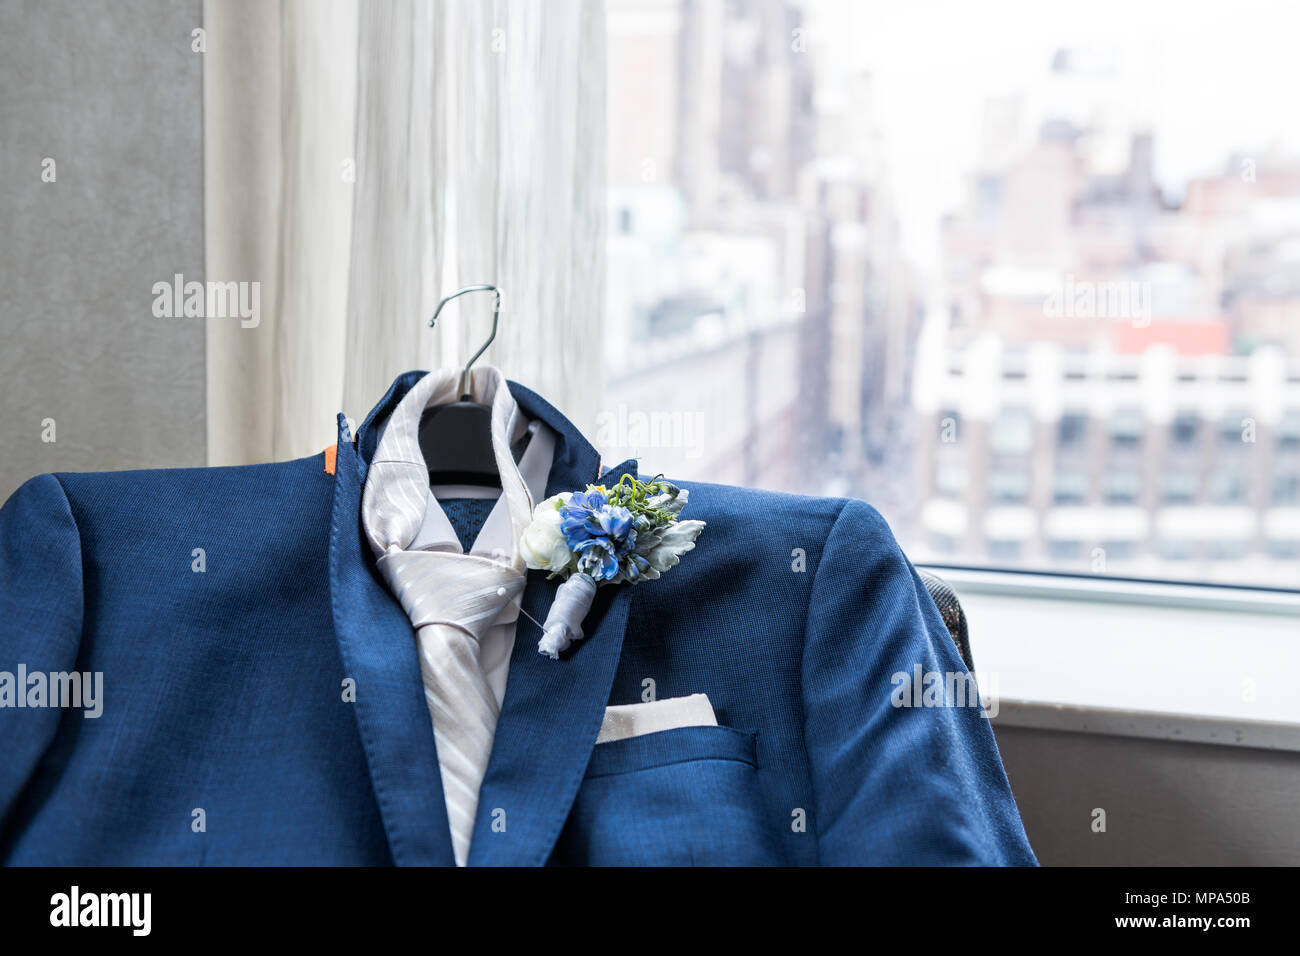 Los hombres de traje y corbata novio closeup con flor en el ojal, preparación de boda pañuelo de bolsillo, ventana con vista urbana de la ciudad de York NYC Ma